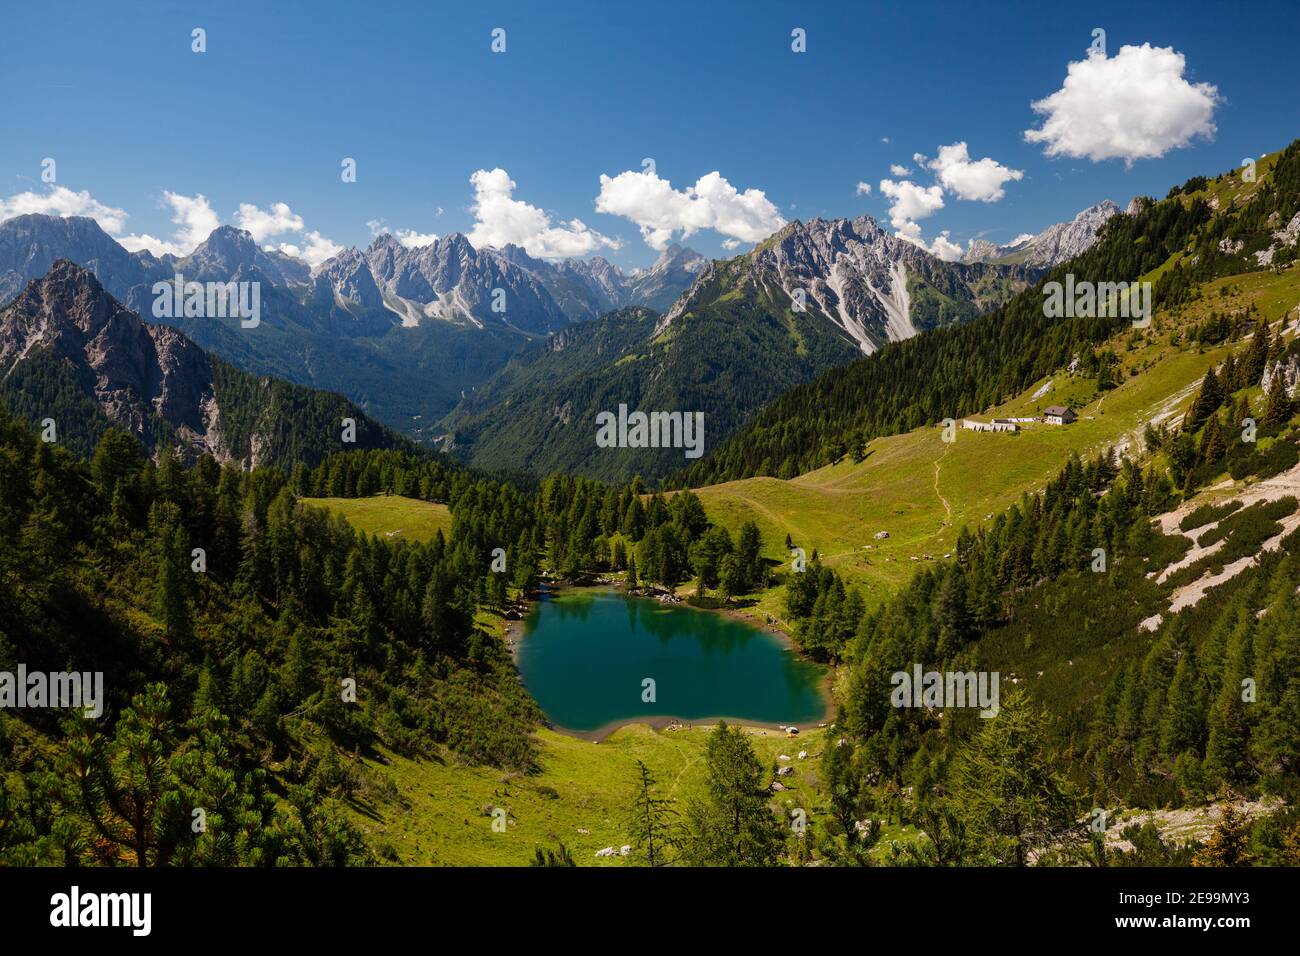 Splendida vista sul paesaggio montano con il lago di Bordaglia, verdi pascoli e alte montagne sullo sfondo. Foto Stock